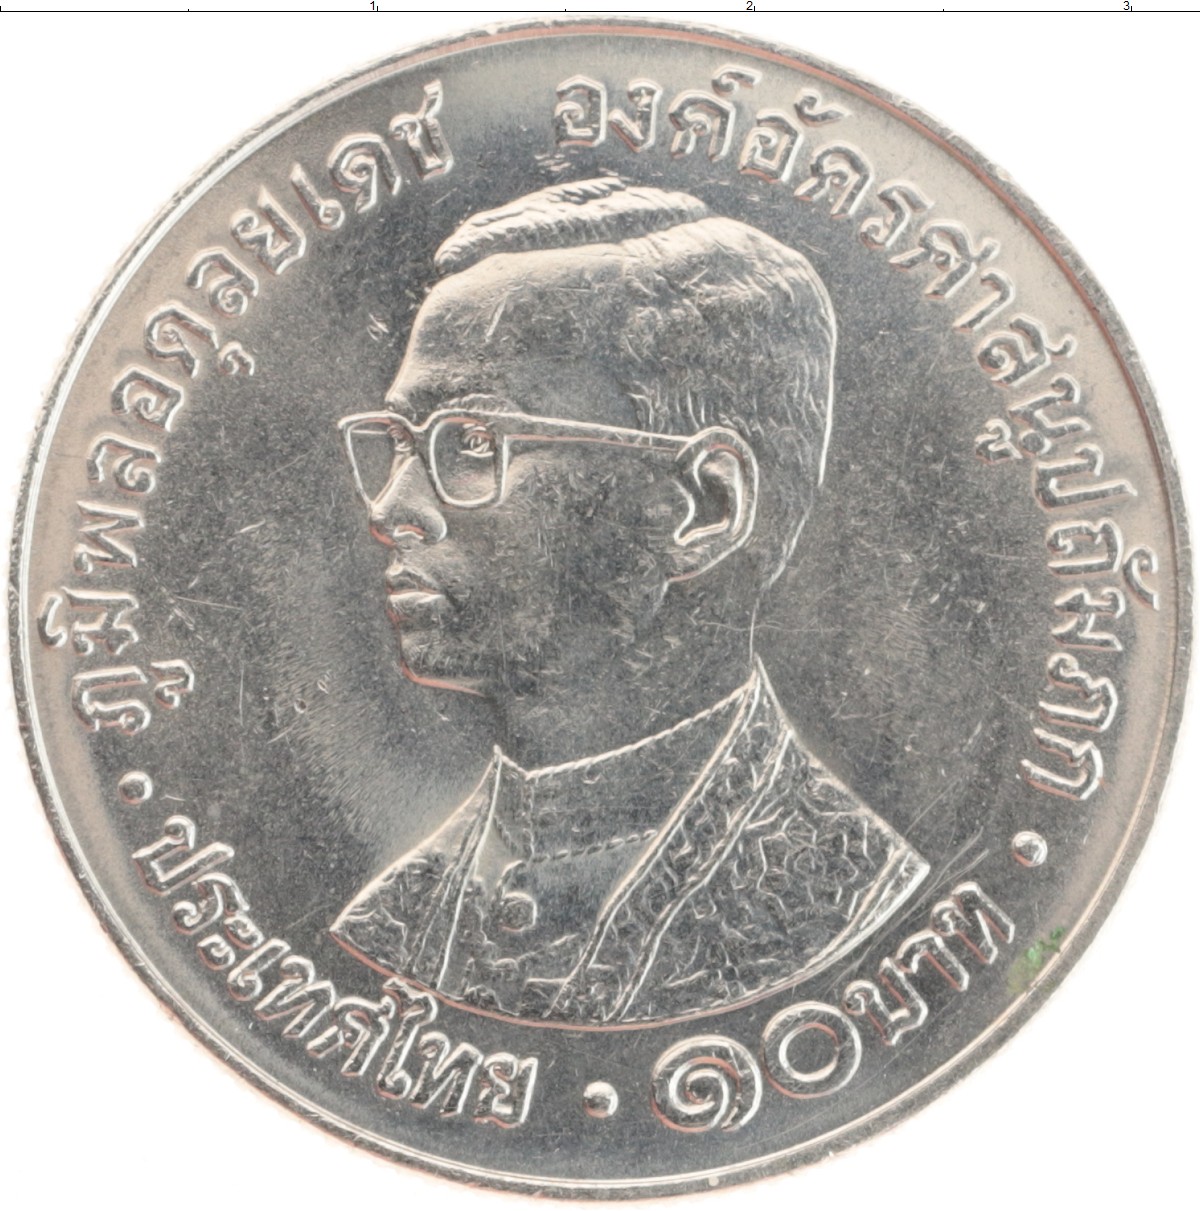 1000000 бат. 10 Батт. Монета Таиланда 1 бат 1986 года. 10 Бат монета фото. Десять бат.